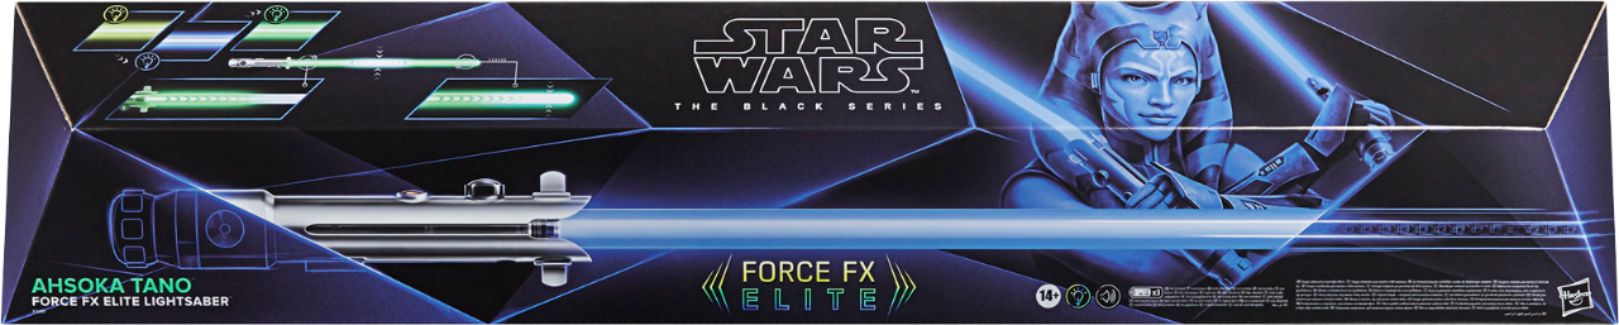 star wars black series force fx lightsaber